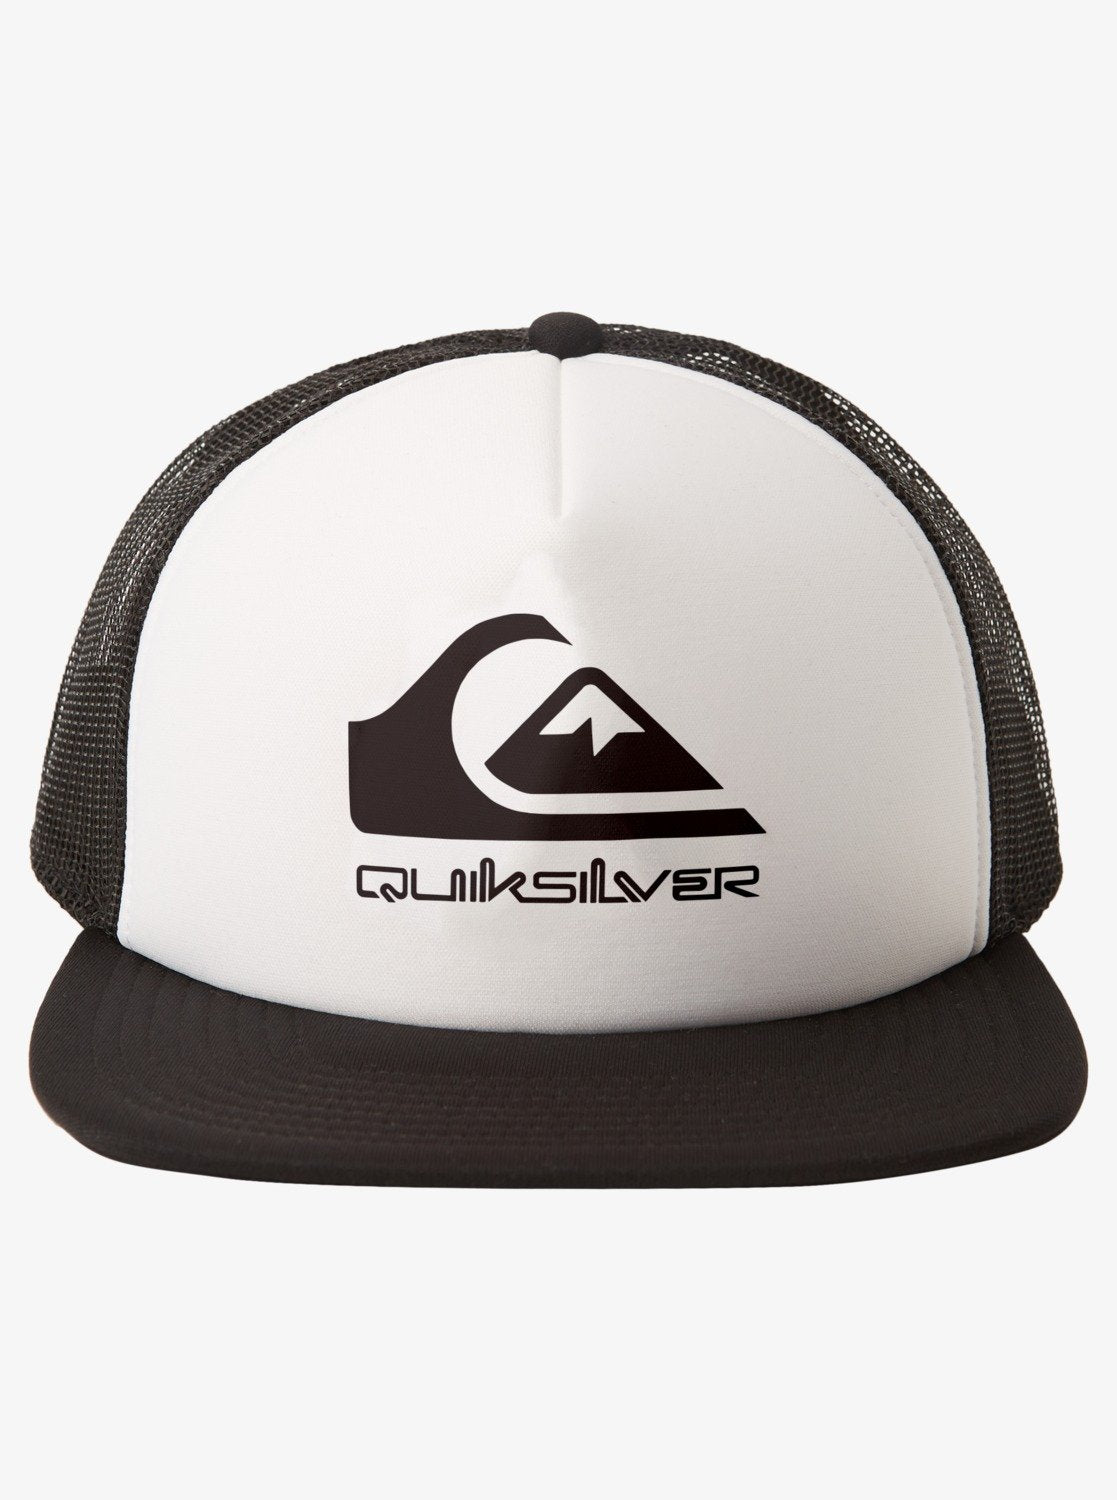 Quiksilver Foamslayer Mesh Trucker Hat - 5 Panel Foam Hat